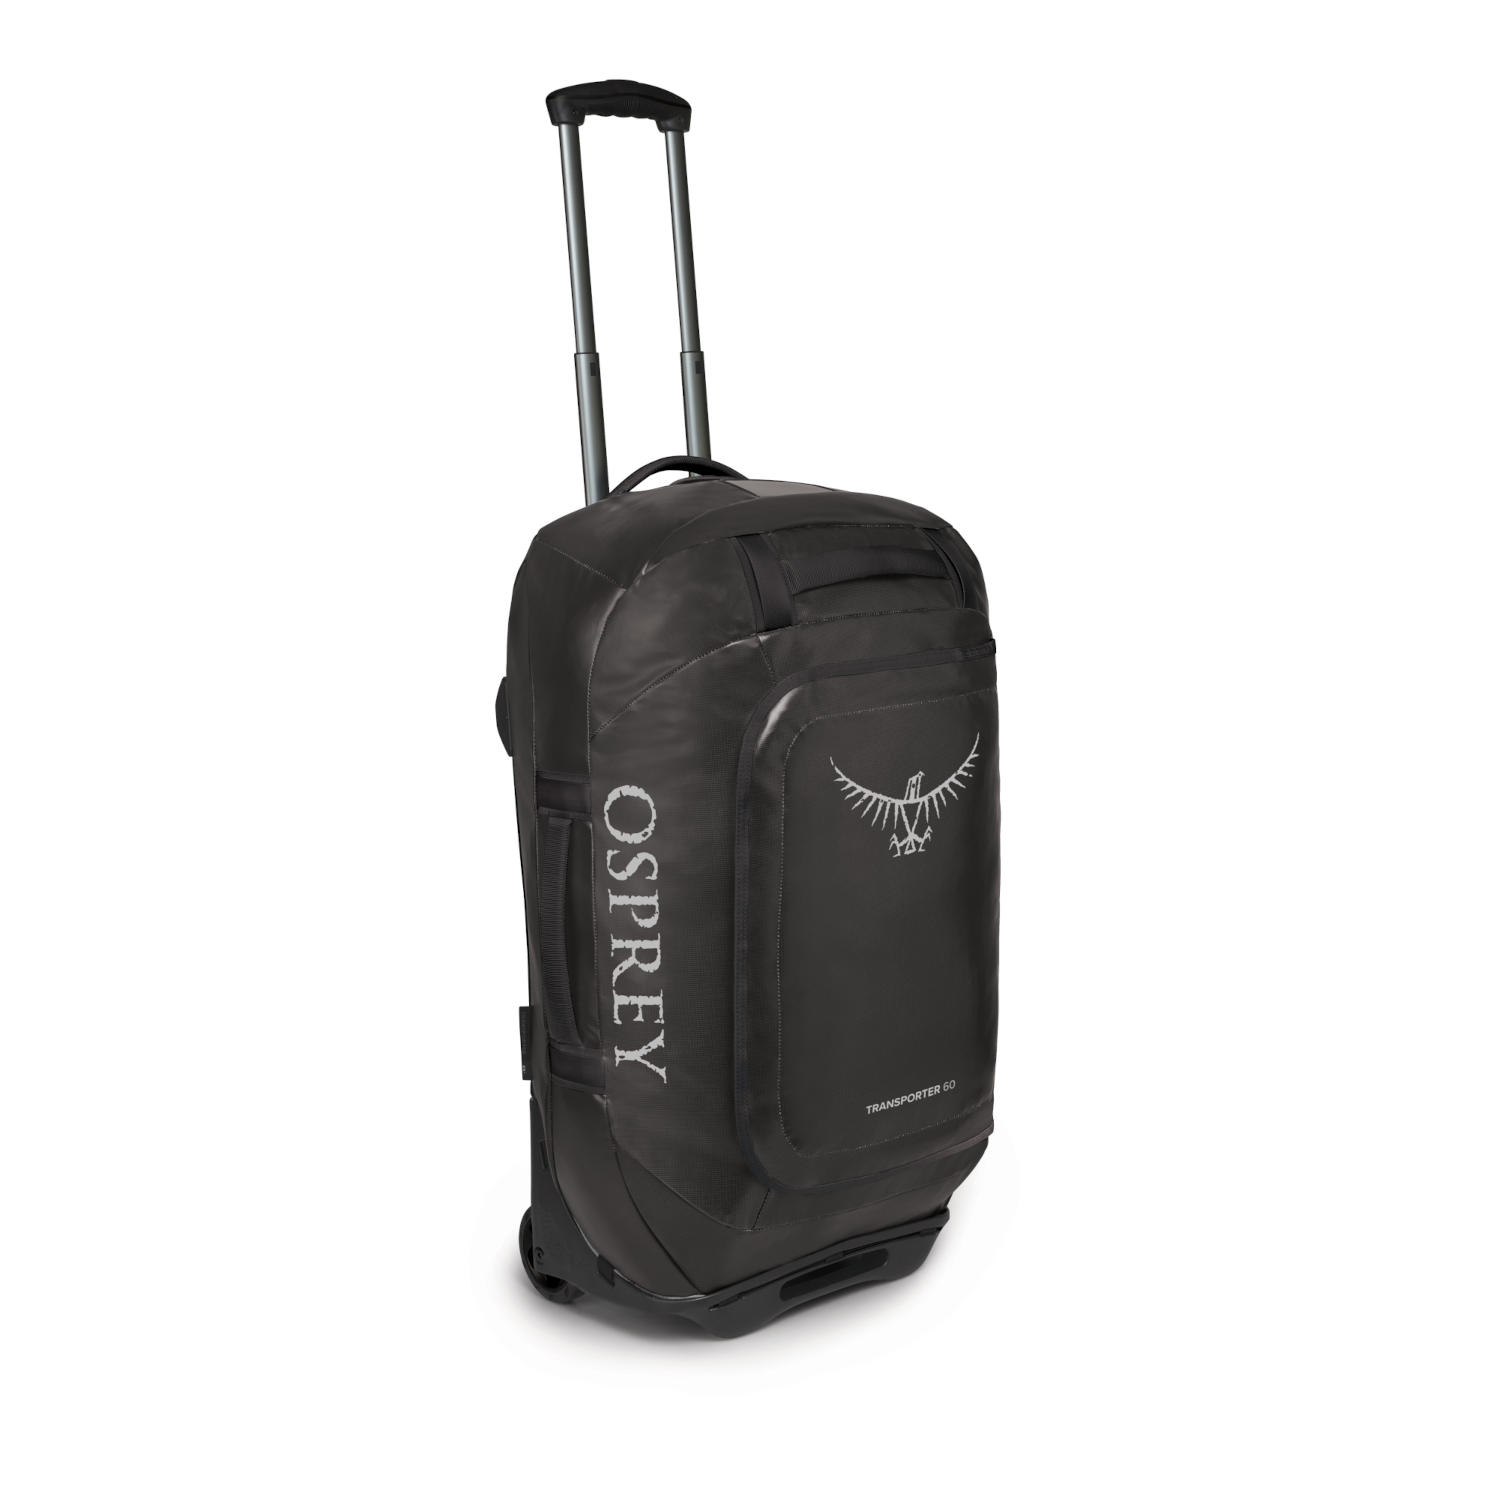 Productfoto van Osprey Rolling Transporter 60 Travel Bag - Black